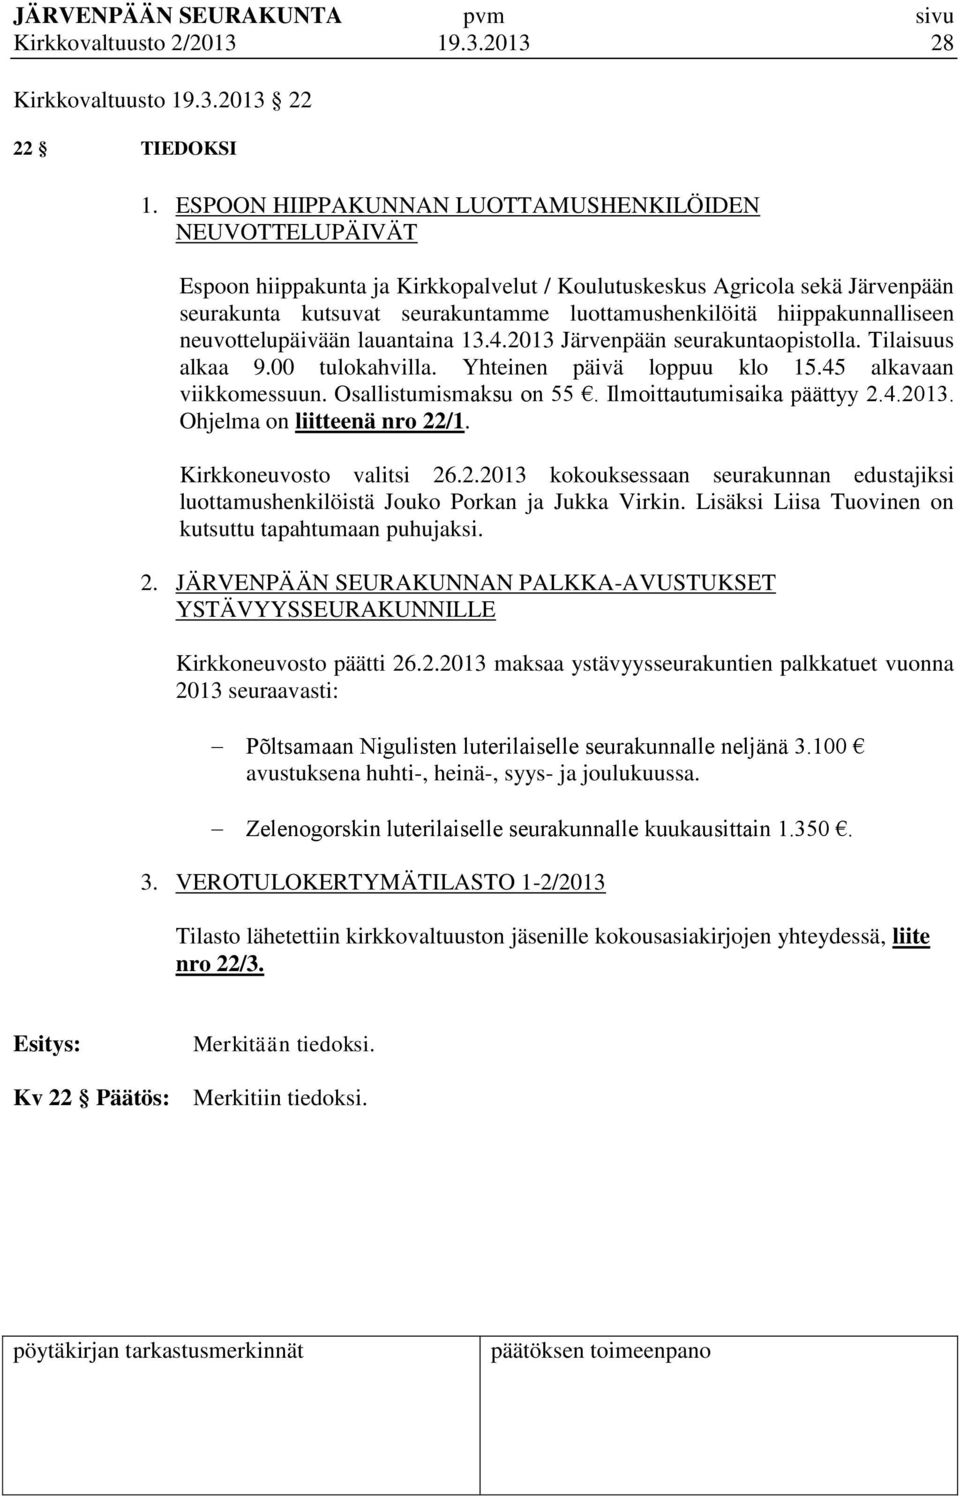 hiippakunnalliseen neuvottelupäivään lauantaina 13.4.2013 Järvenpään seurakuntaopistolla. Tilaisuus alkaa 9.00 tulokahvilla. Yhteinen päivä loppuu klo 15.45 alkavaan viikkomessuun.